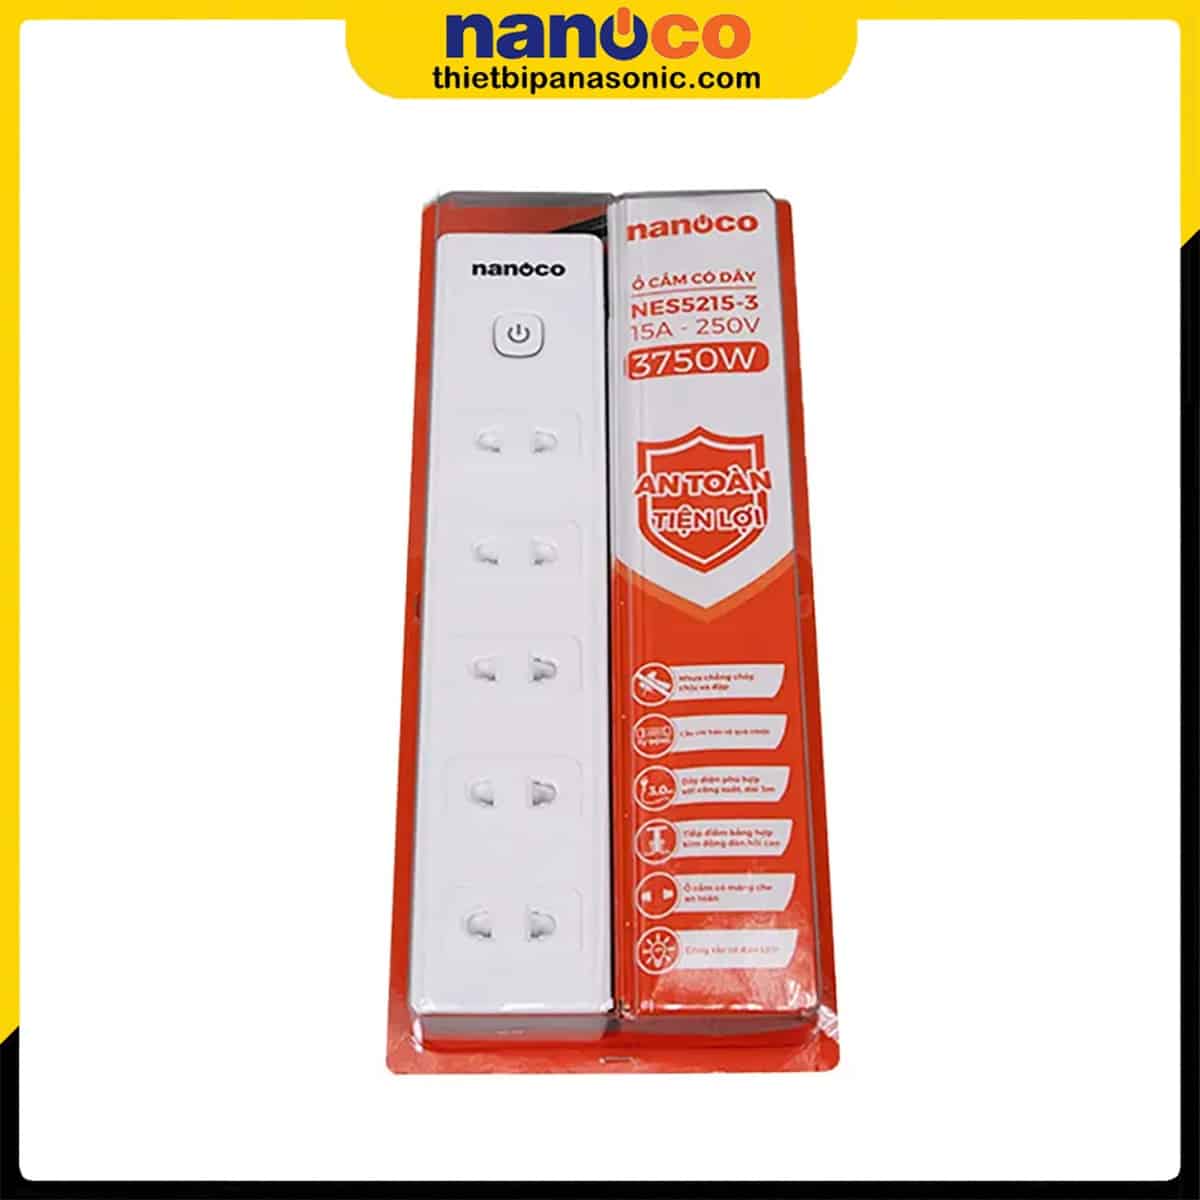 Hộp sản phẩm Ổ cắm có dây Nanoco NES5215-3 với đầy đủ thông tin cần thiết